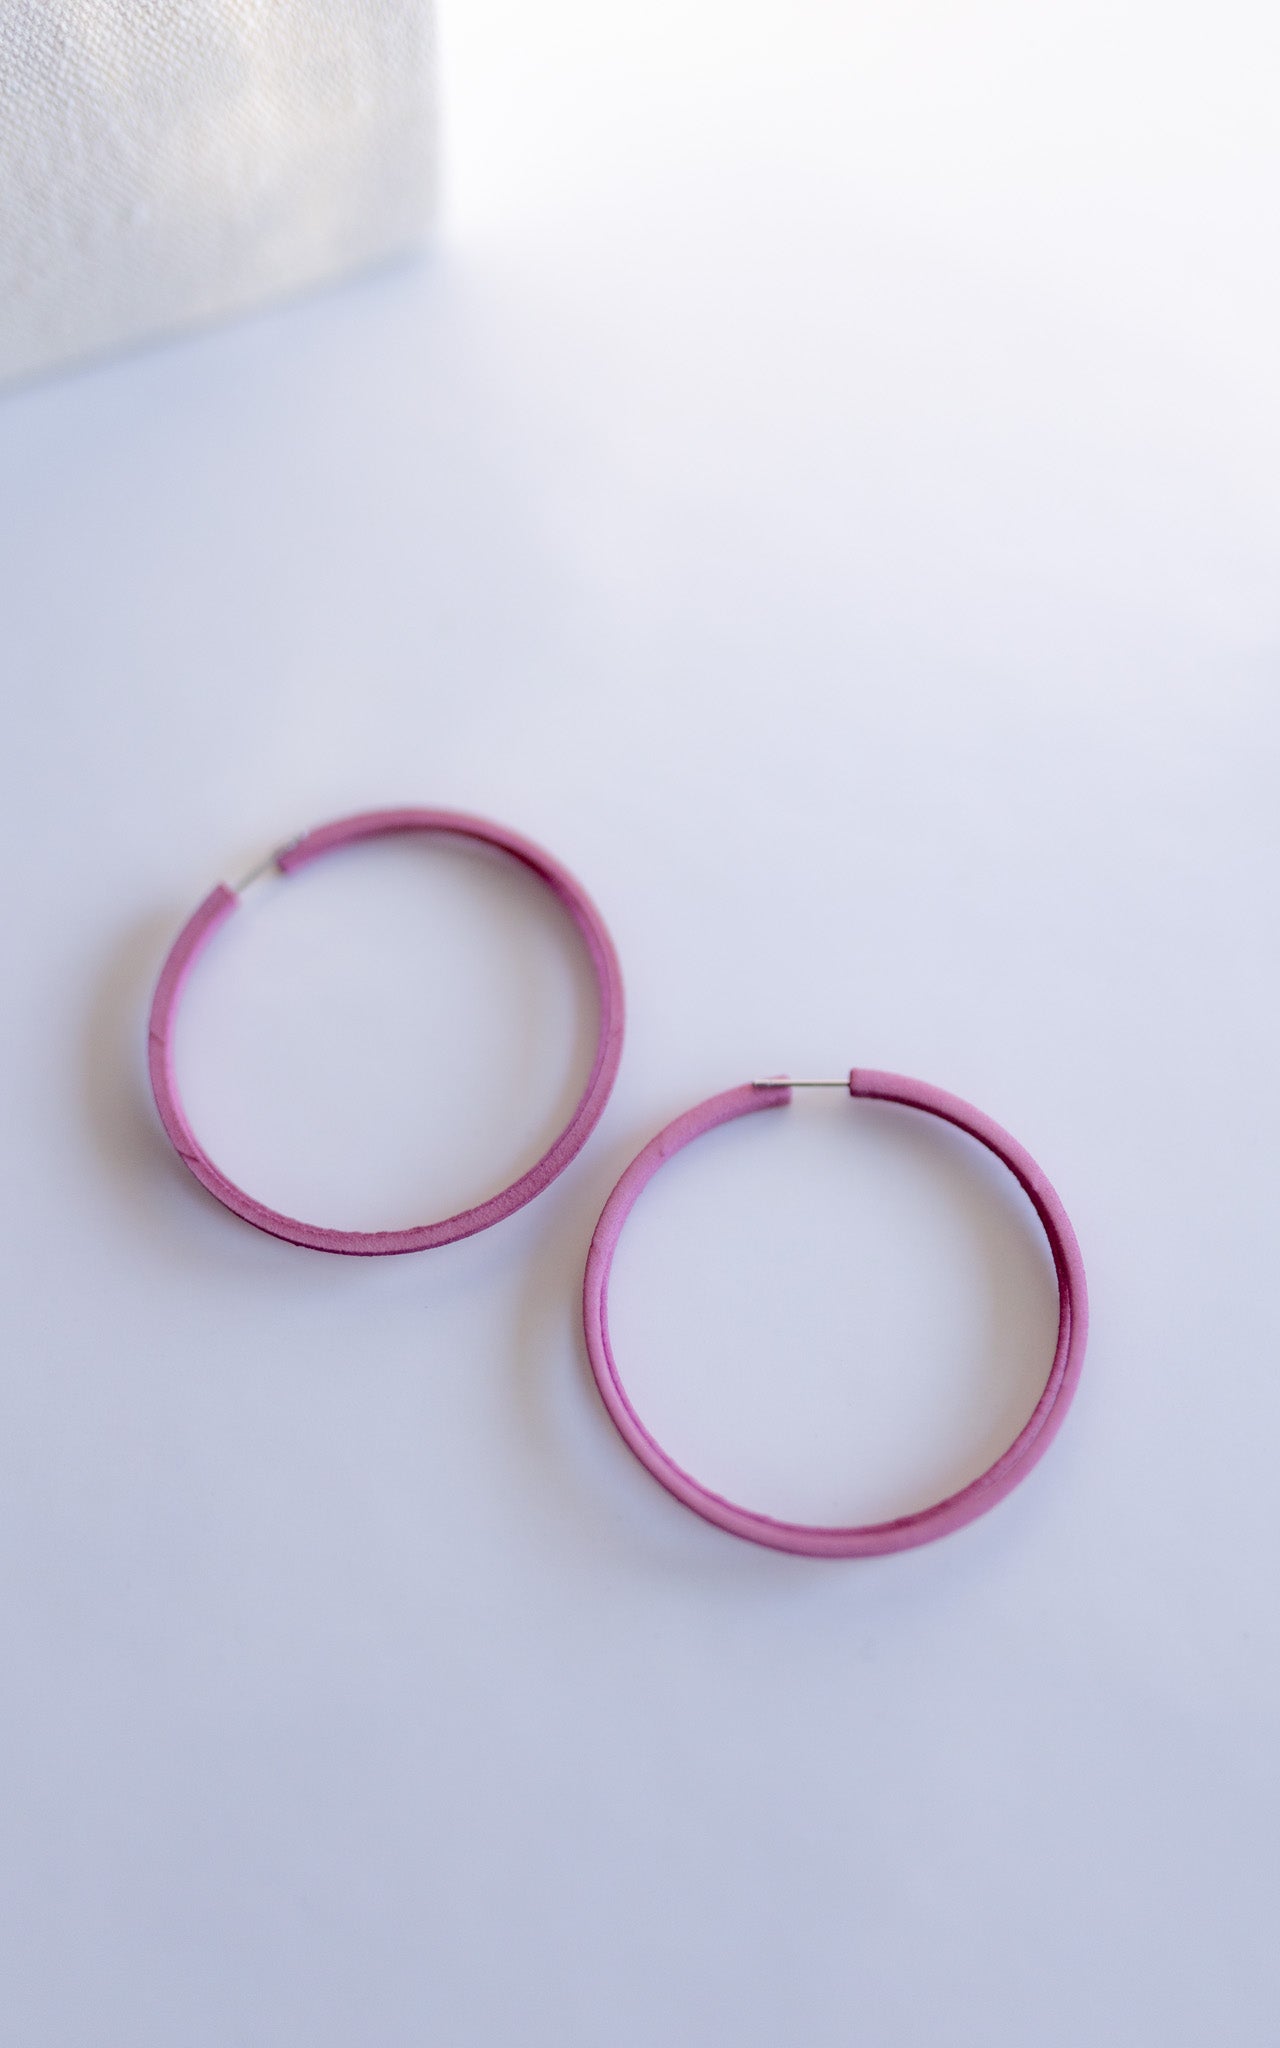 Les anneaux doubles nylon recyclé  I Scoop 5.5